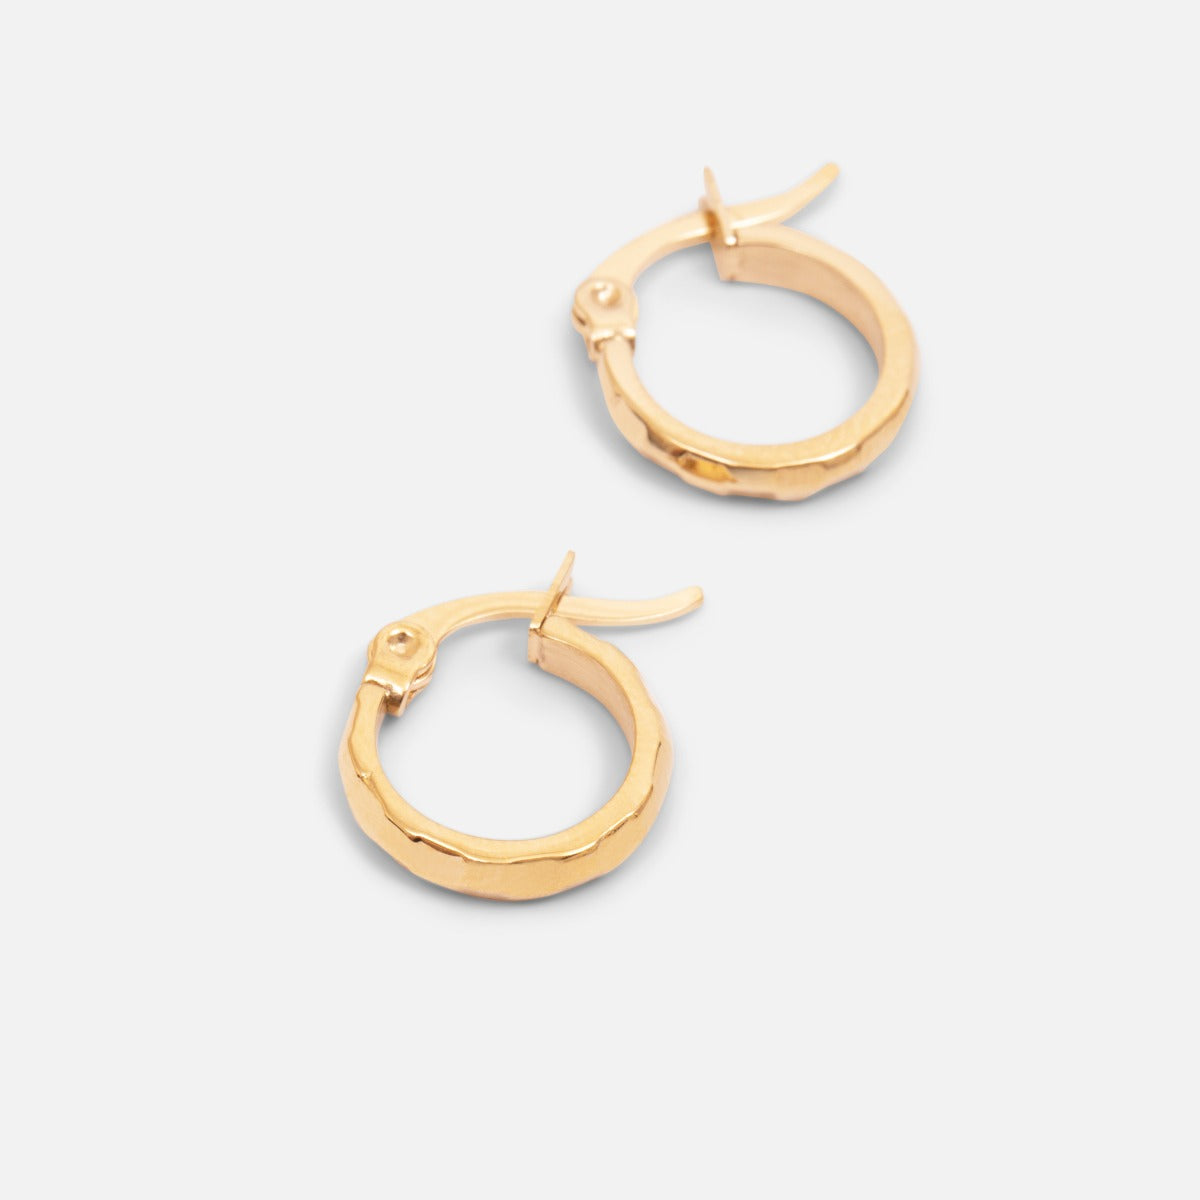 Petites boucles d’oreilles anneaux dorées effet texturé en acier inoxydable